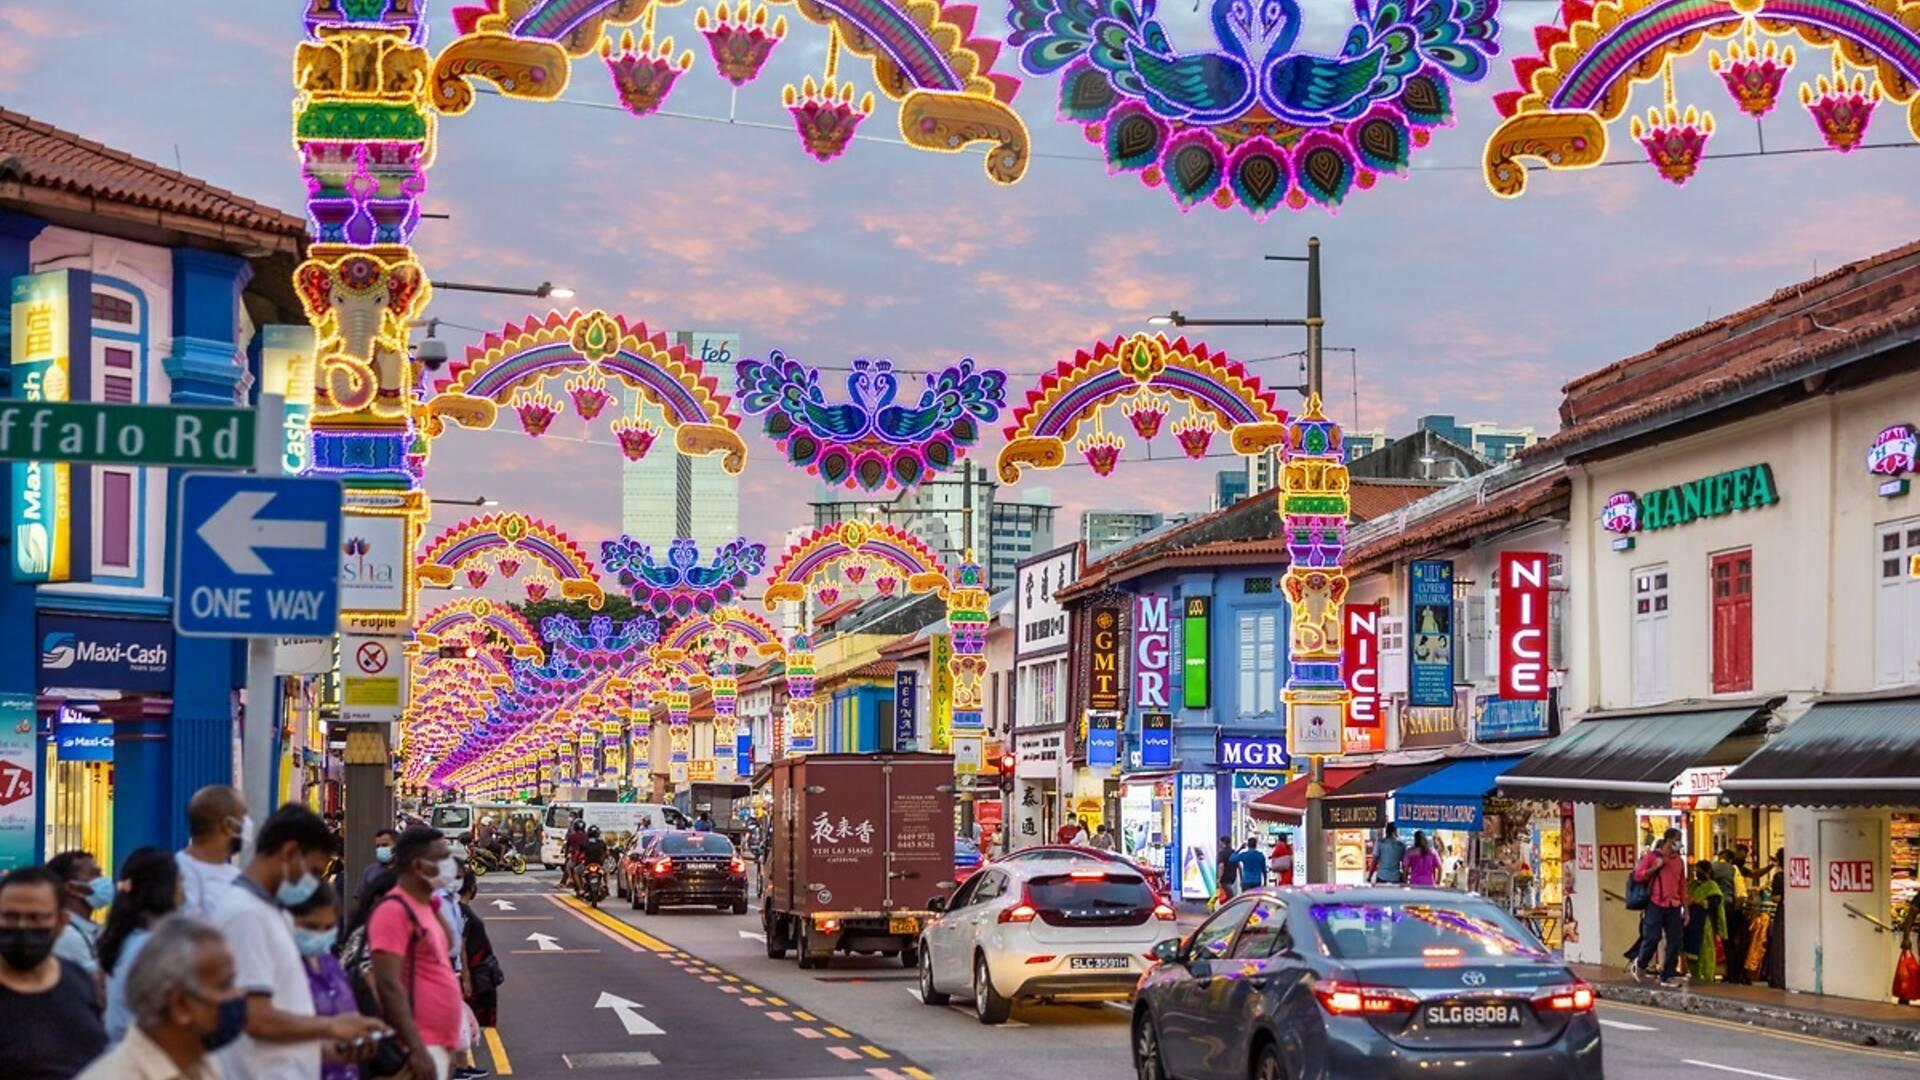 Bỏ túi những điểm đến độc đáo ở Little India để có trải nghiệm du lịch Singapore đặc sắc dịp cuối năm – Du lịch